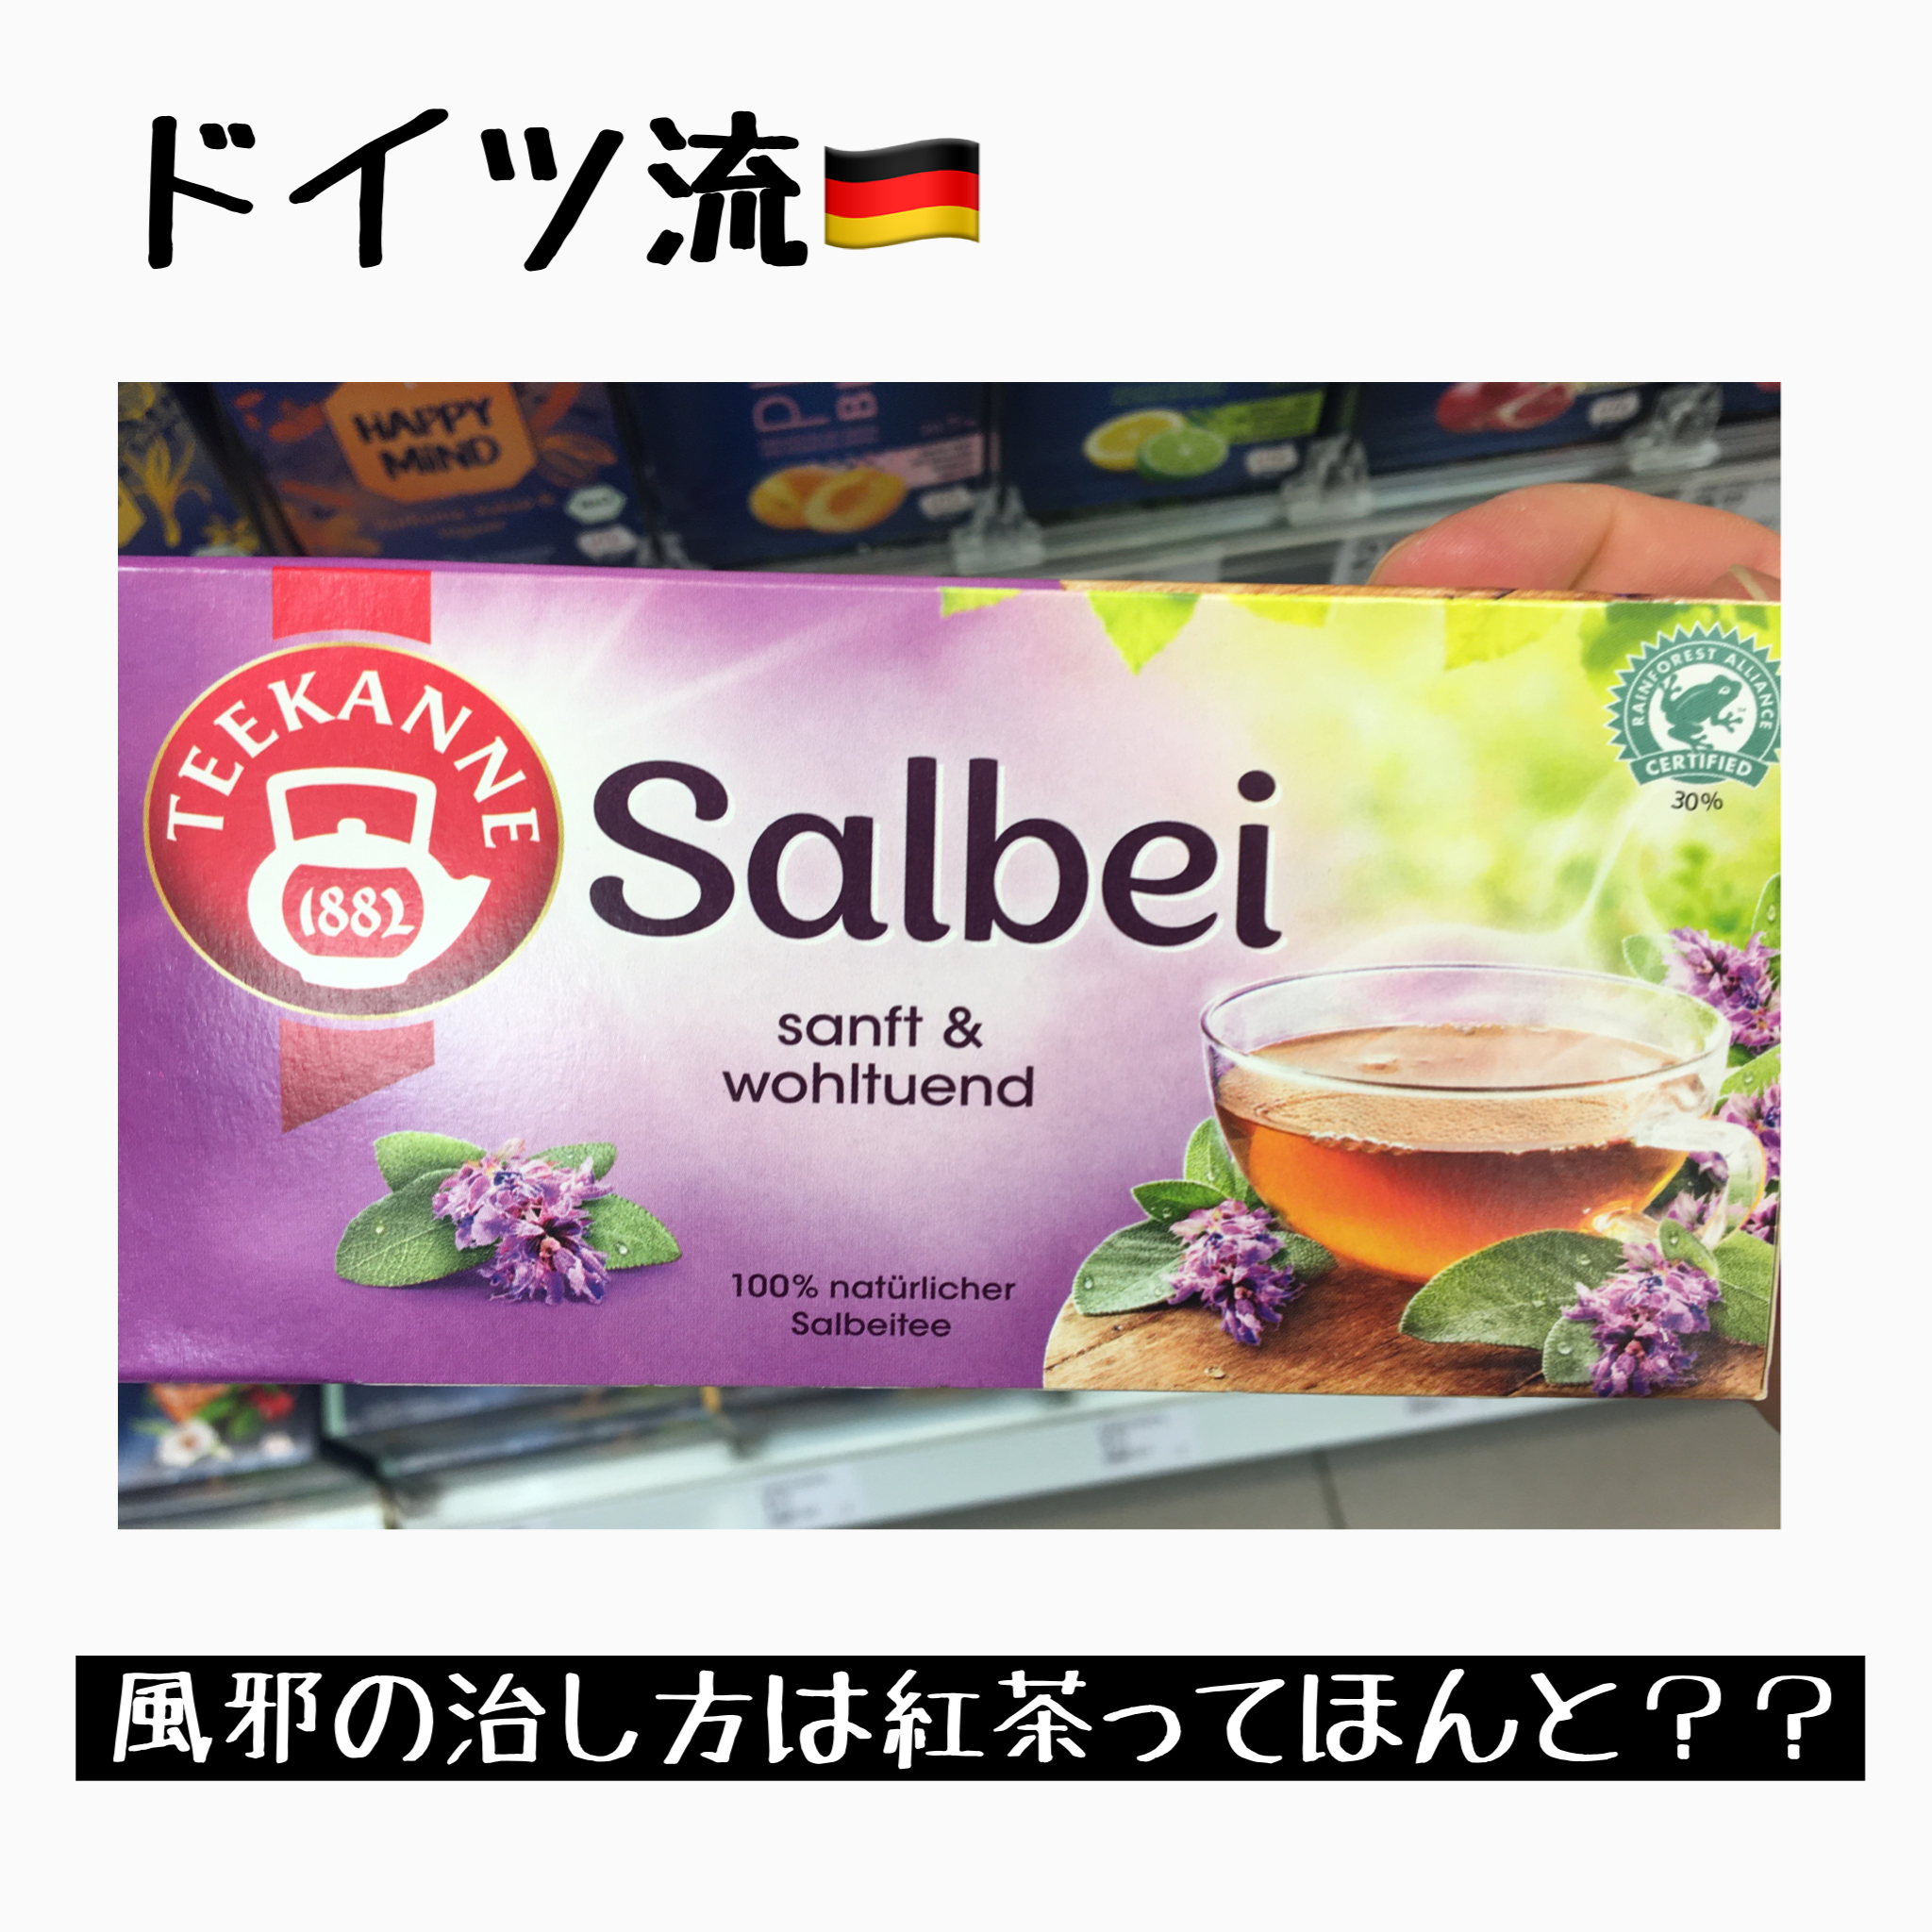 【ドイツ流】風邪の治し方  ドイツで風邪を引いたら紅茶を飲むってほんと！？